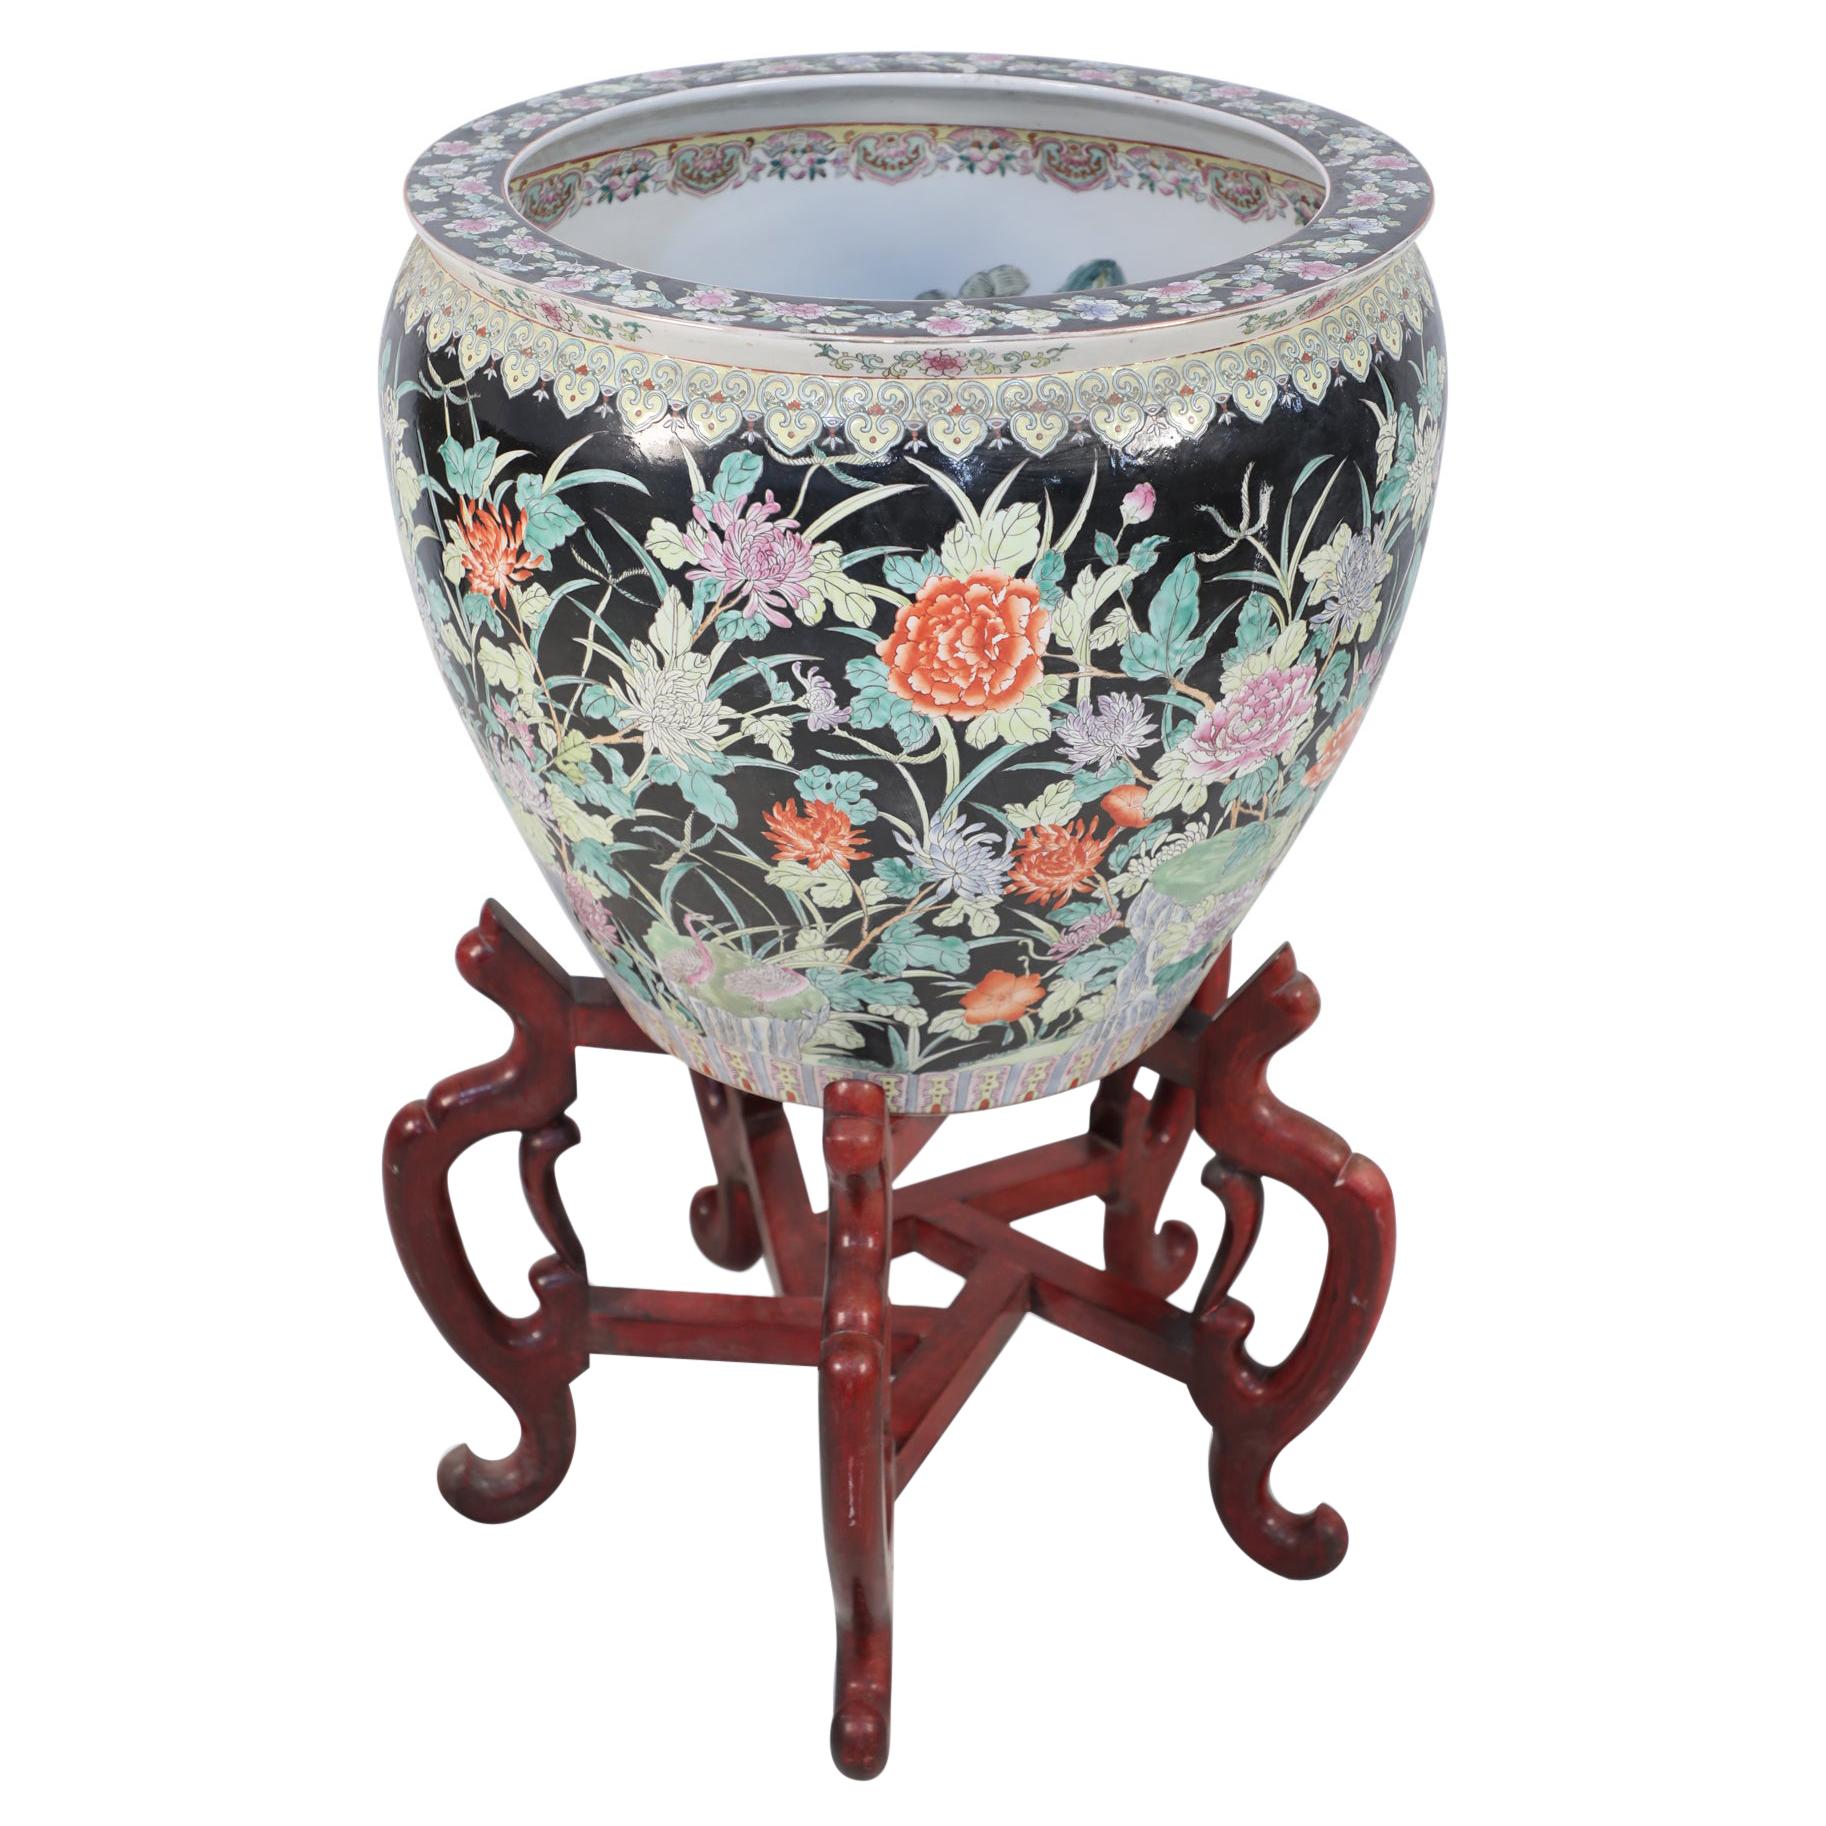 Jardinière chinoise en porcelaine à motifs floraux avec support en bois